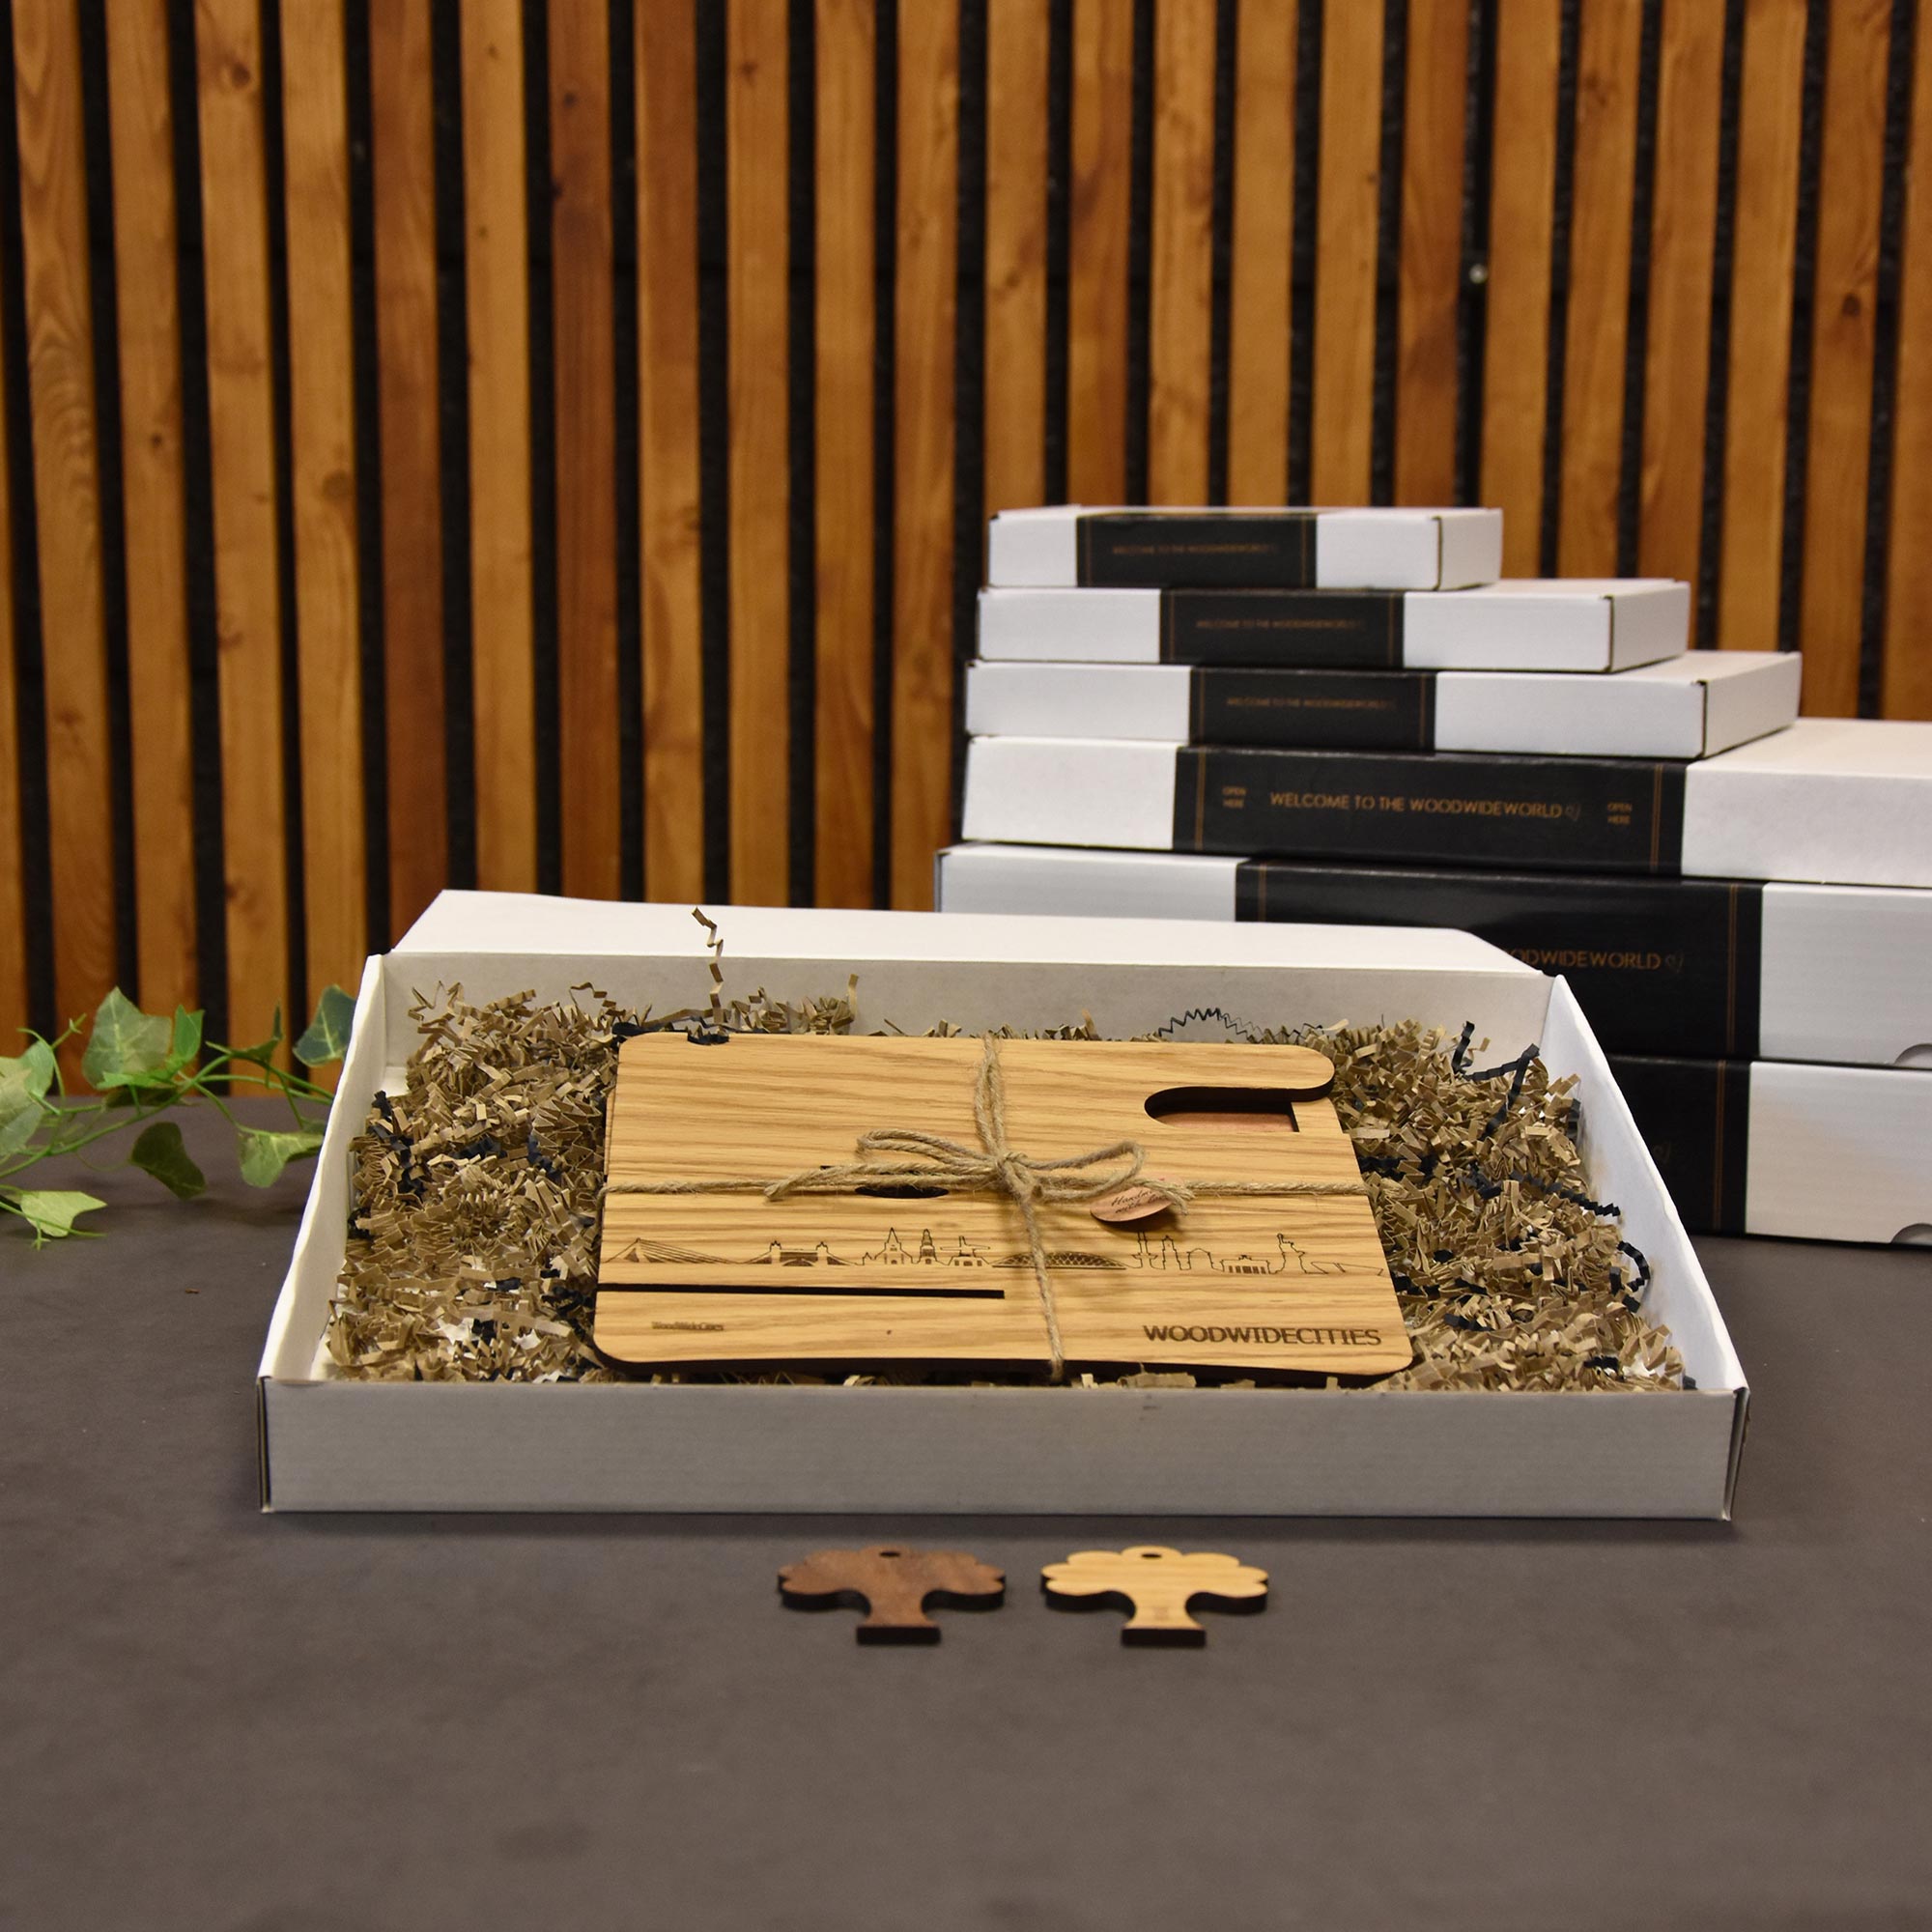 Skyline Desk Organizer Terschelling houten cadeau decoratie relatiegeschenk van WoodWideCities